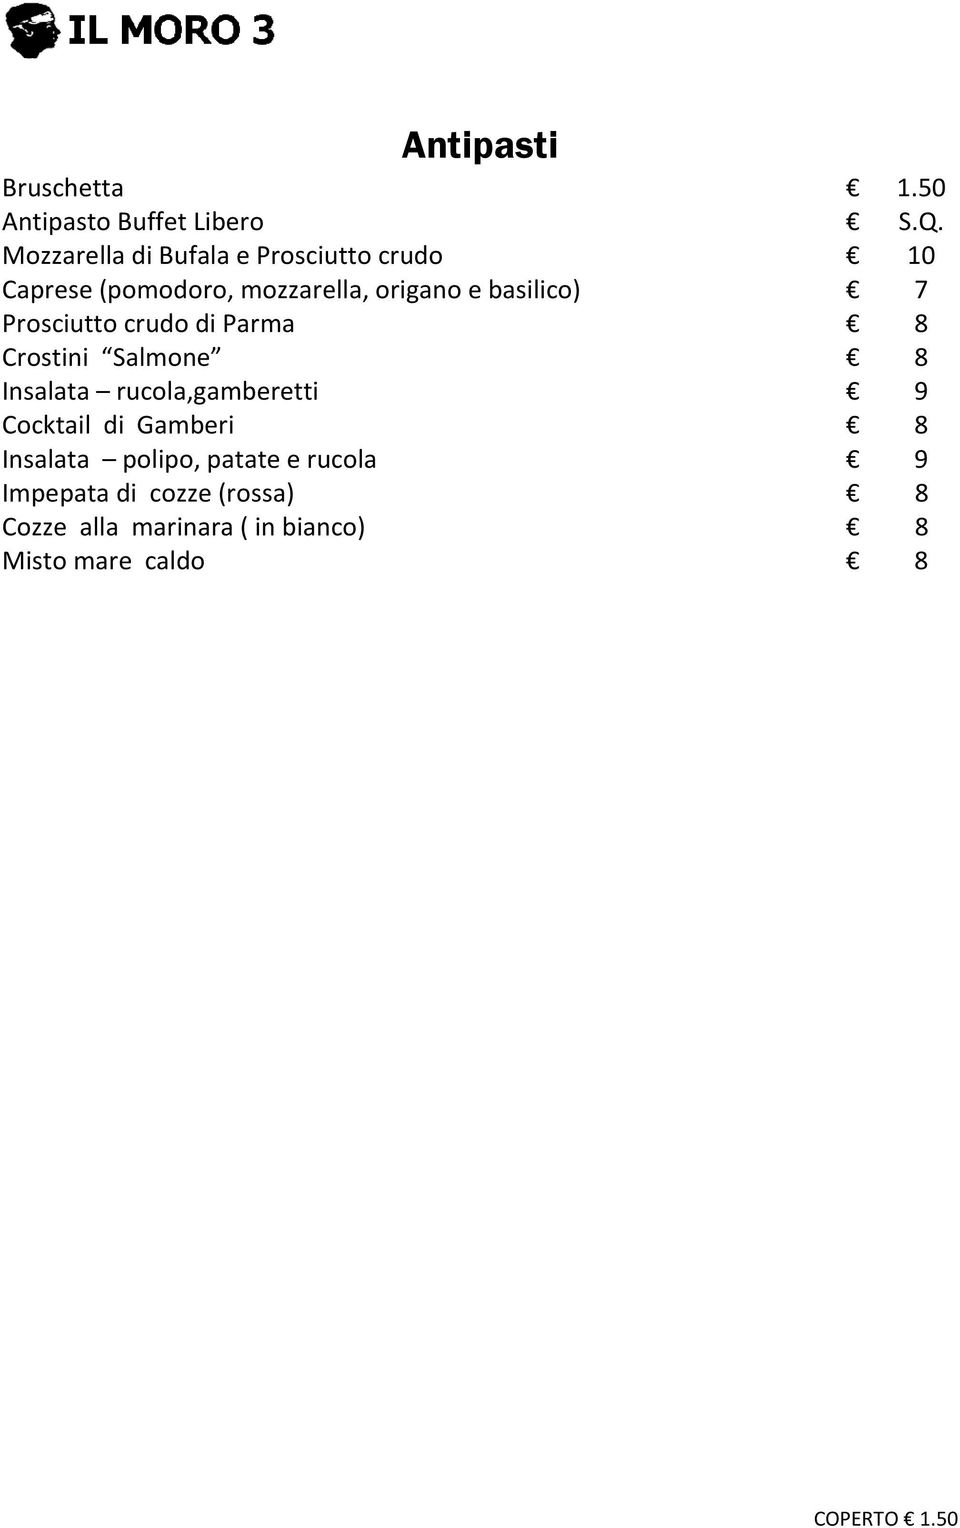 basilico) 7 Prosciutto crudo di Parma 8 Crostini Salmone 8 Insalata rucola,gamberetti 9